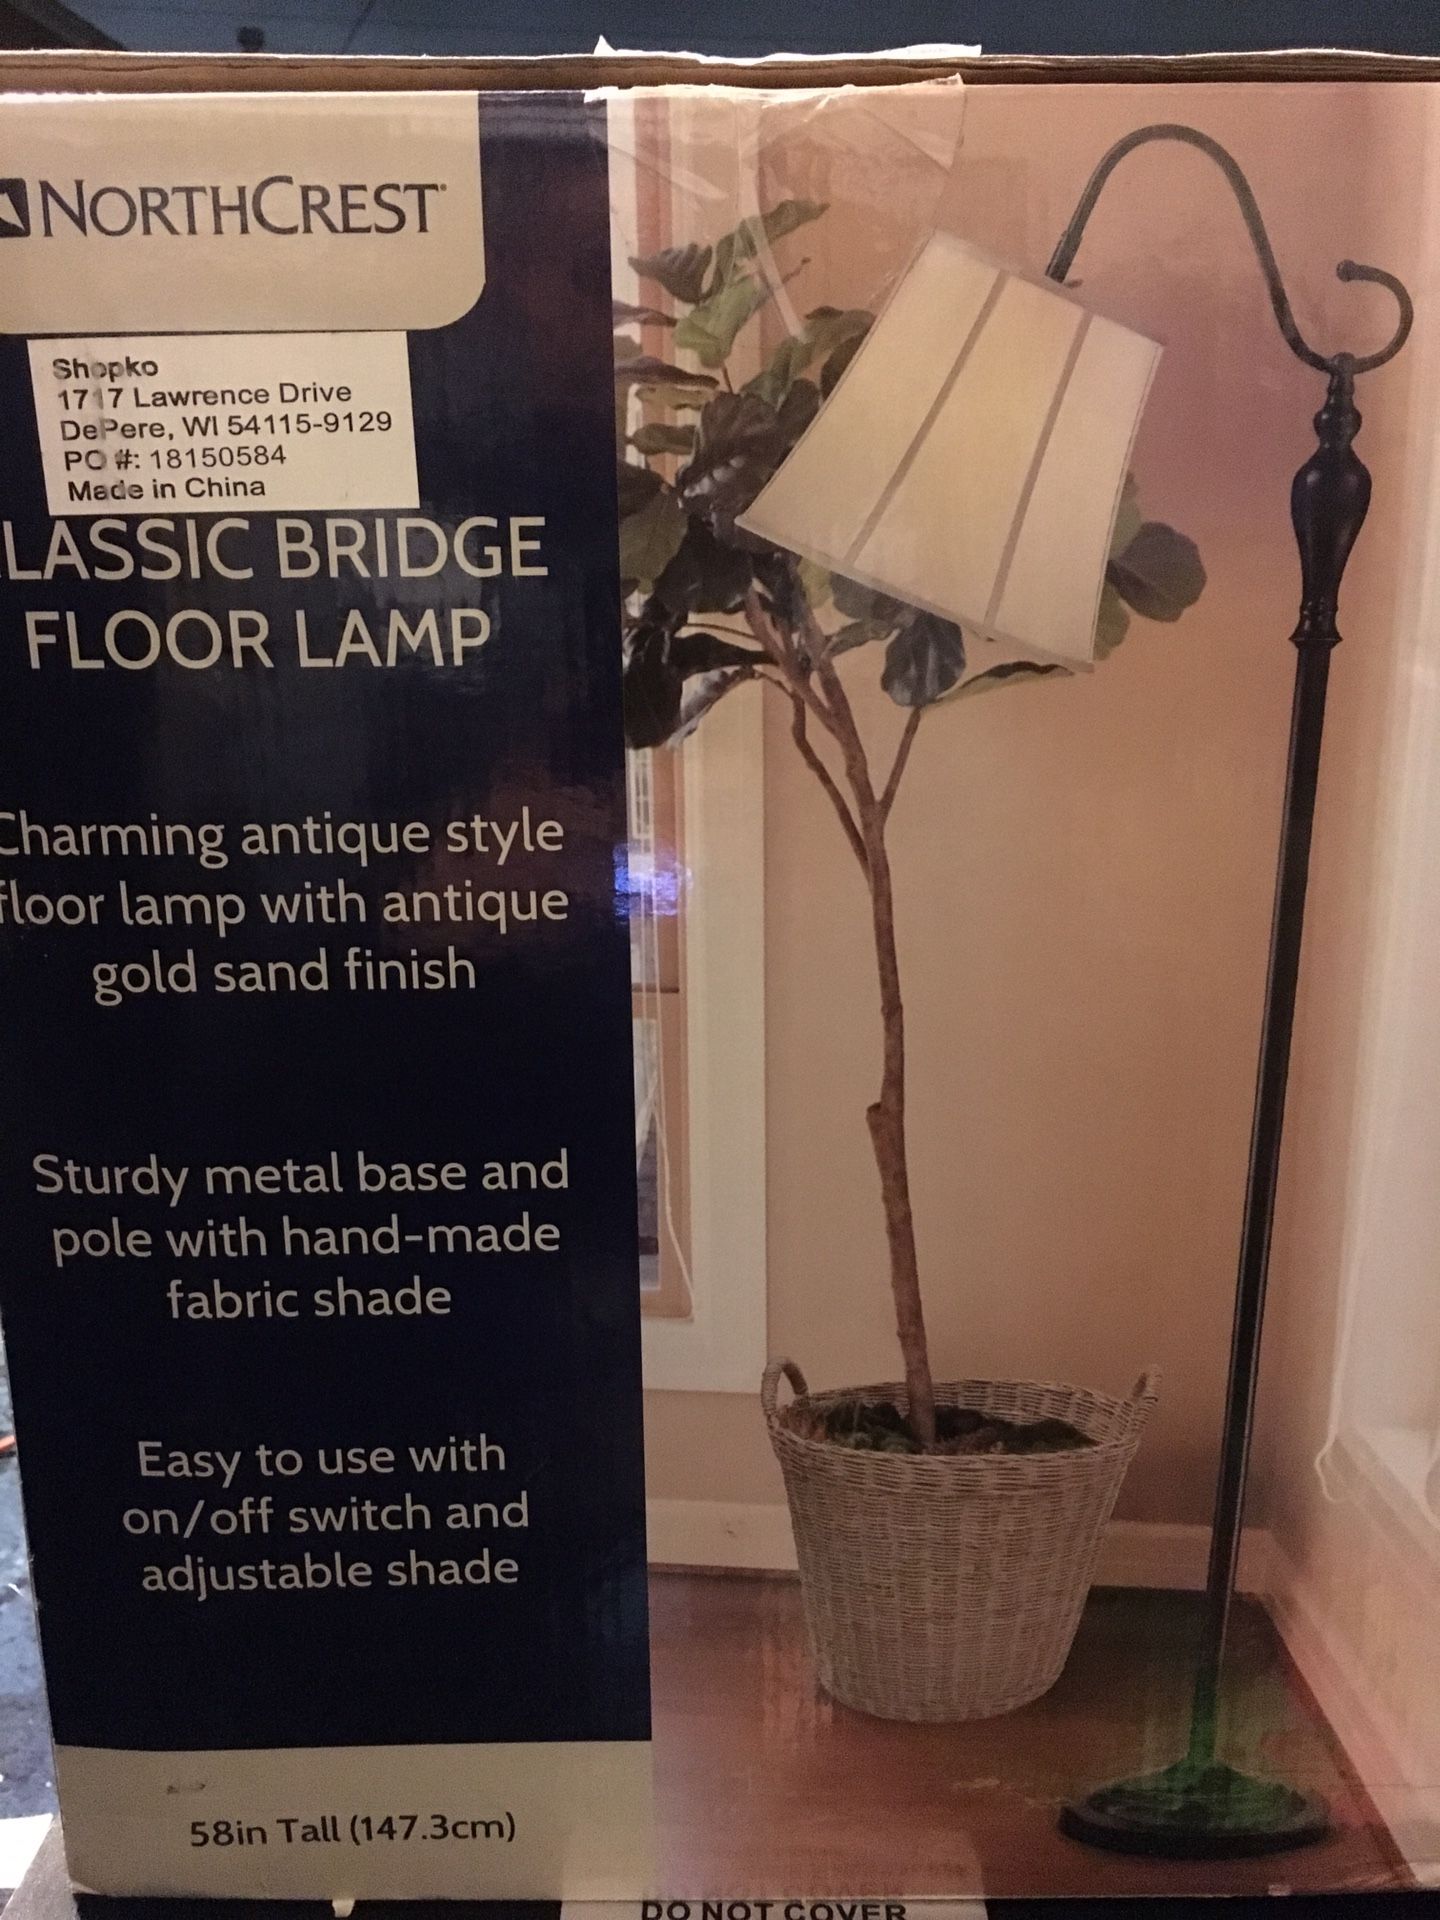 NORTHCREST CLASSIC BRIDGE FLOOR LAMP